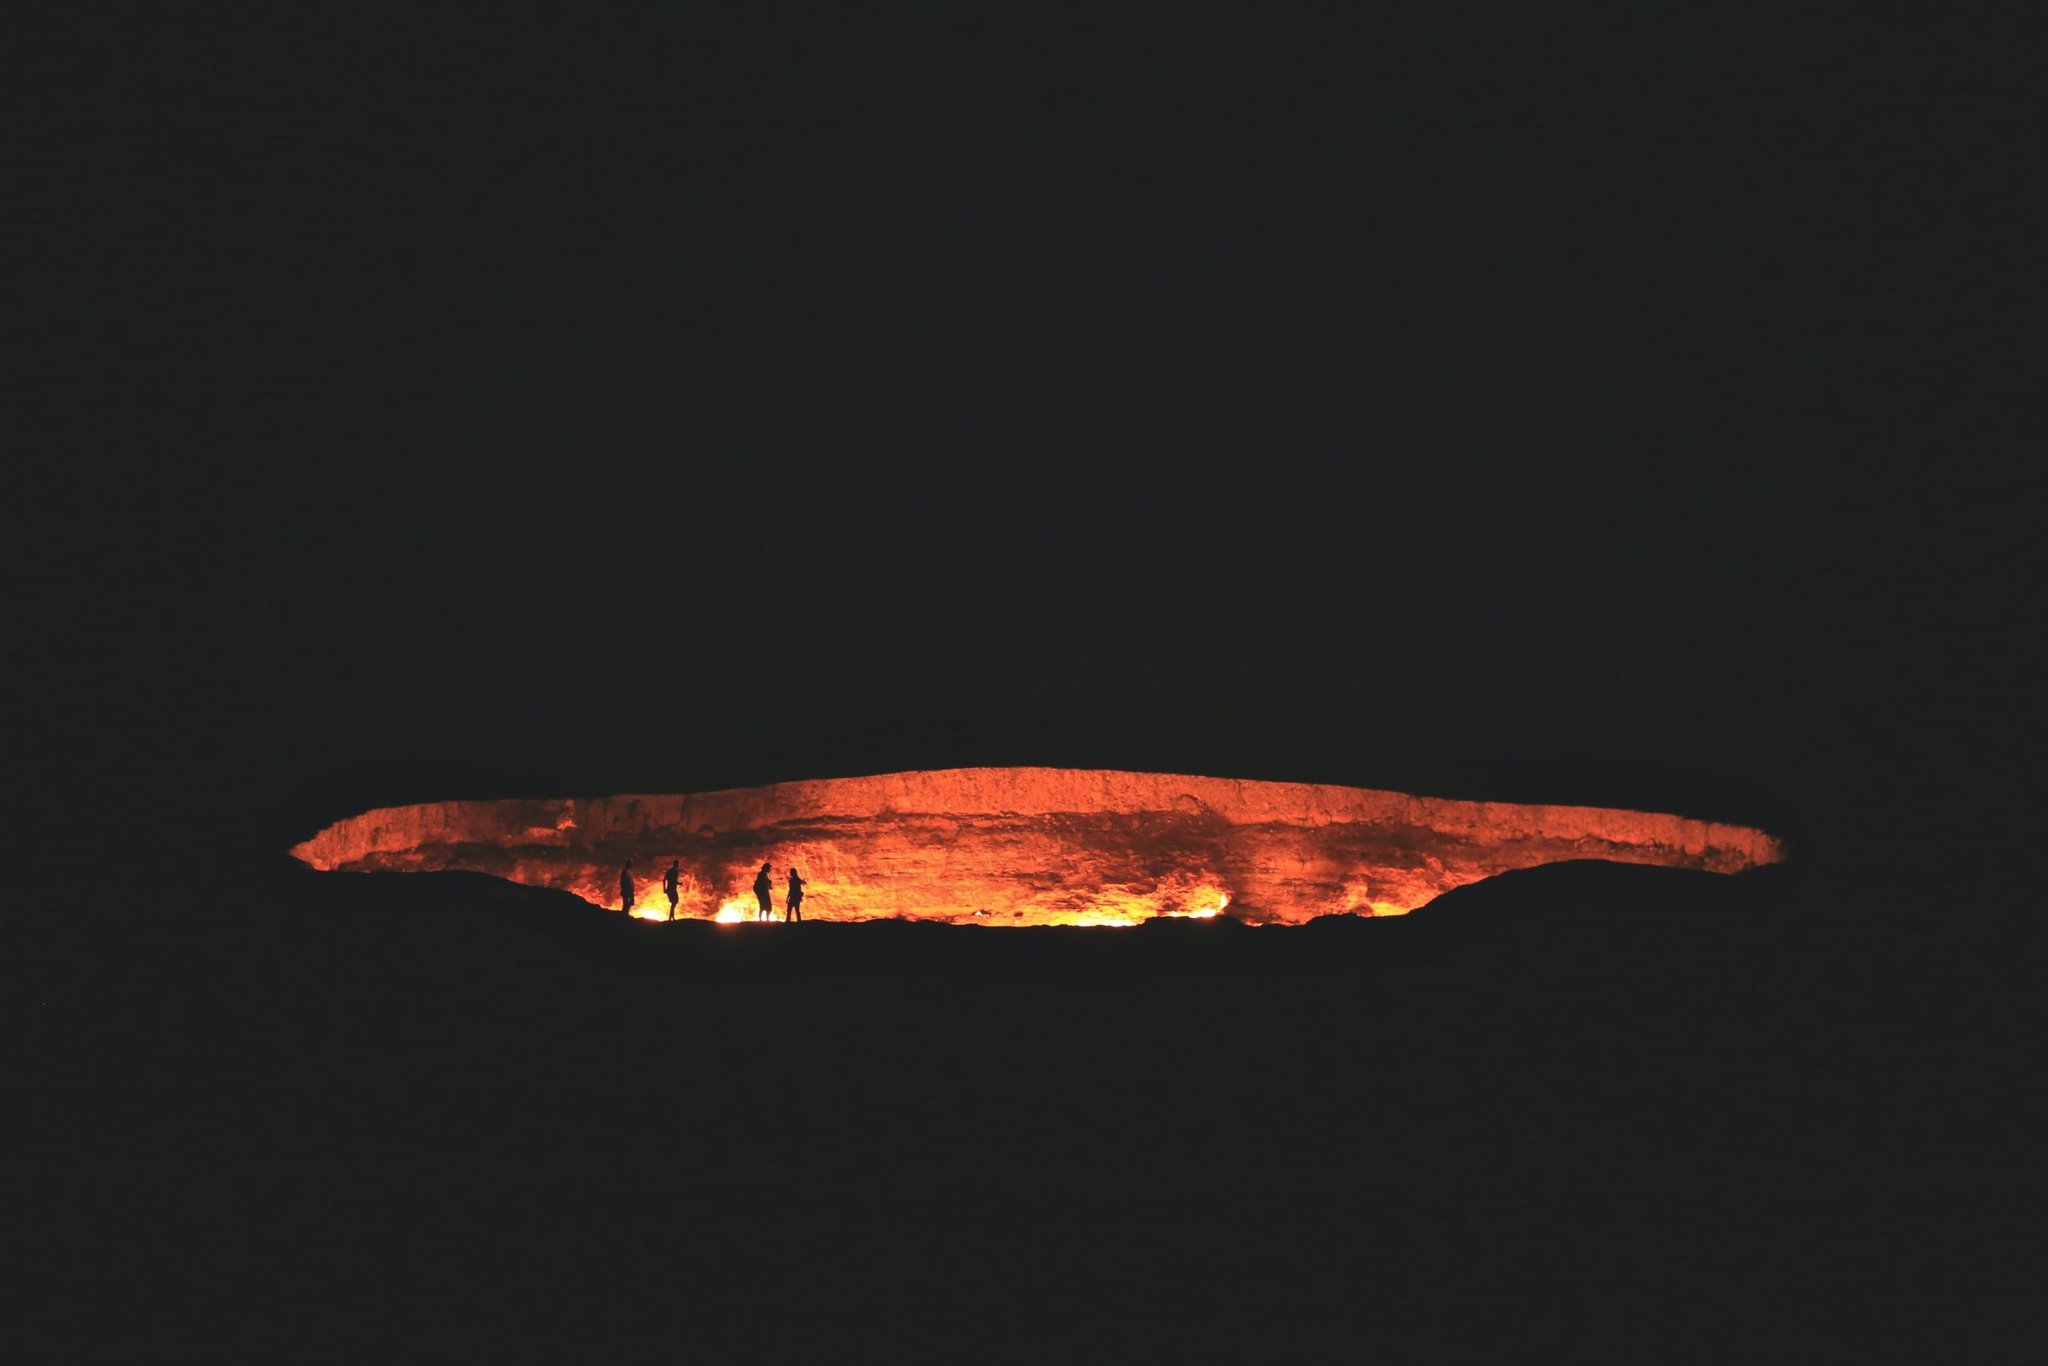 turkmenistam darvaza brána do pekla peklo oheň kráter